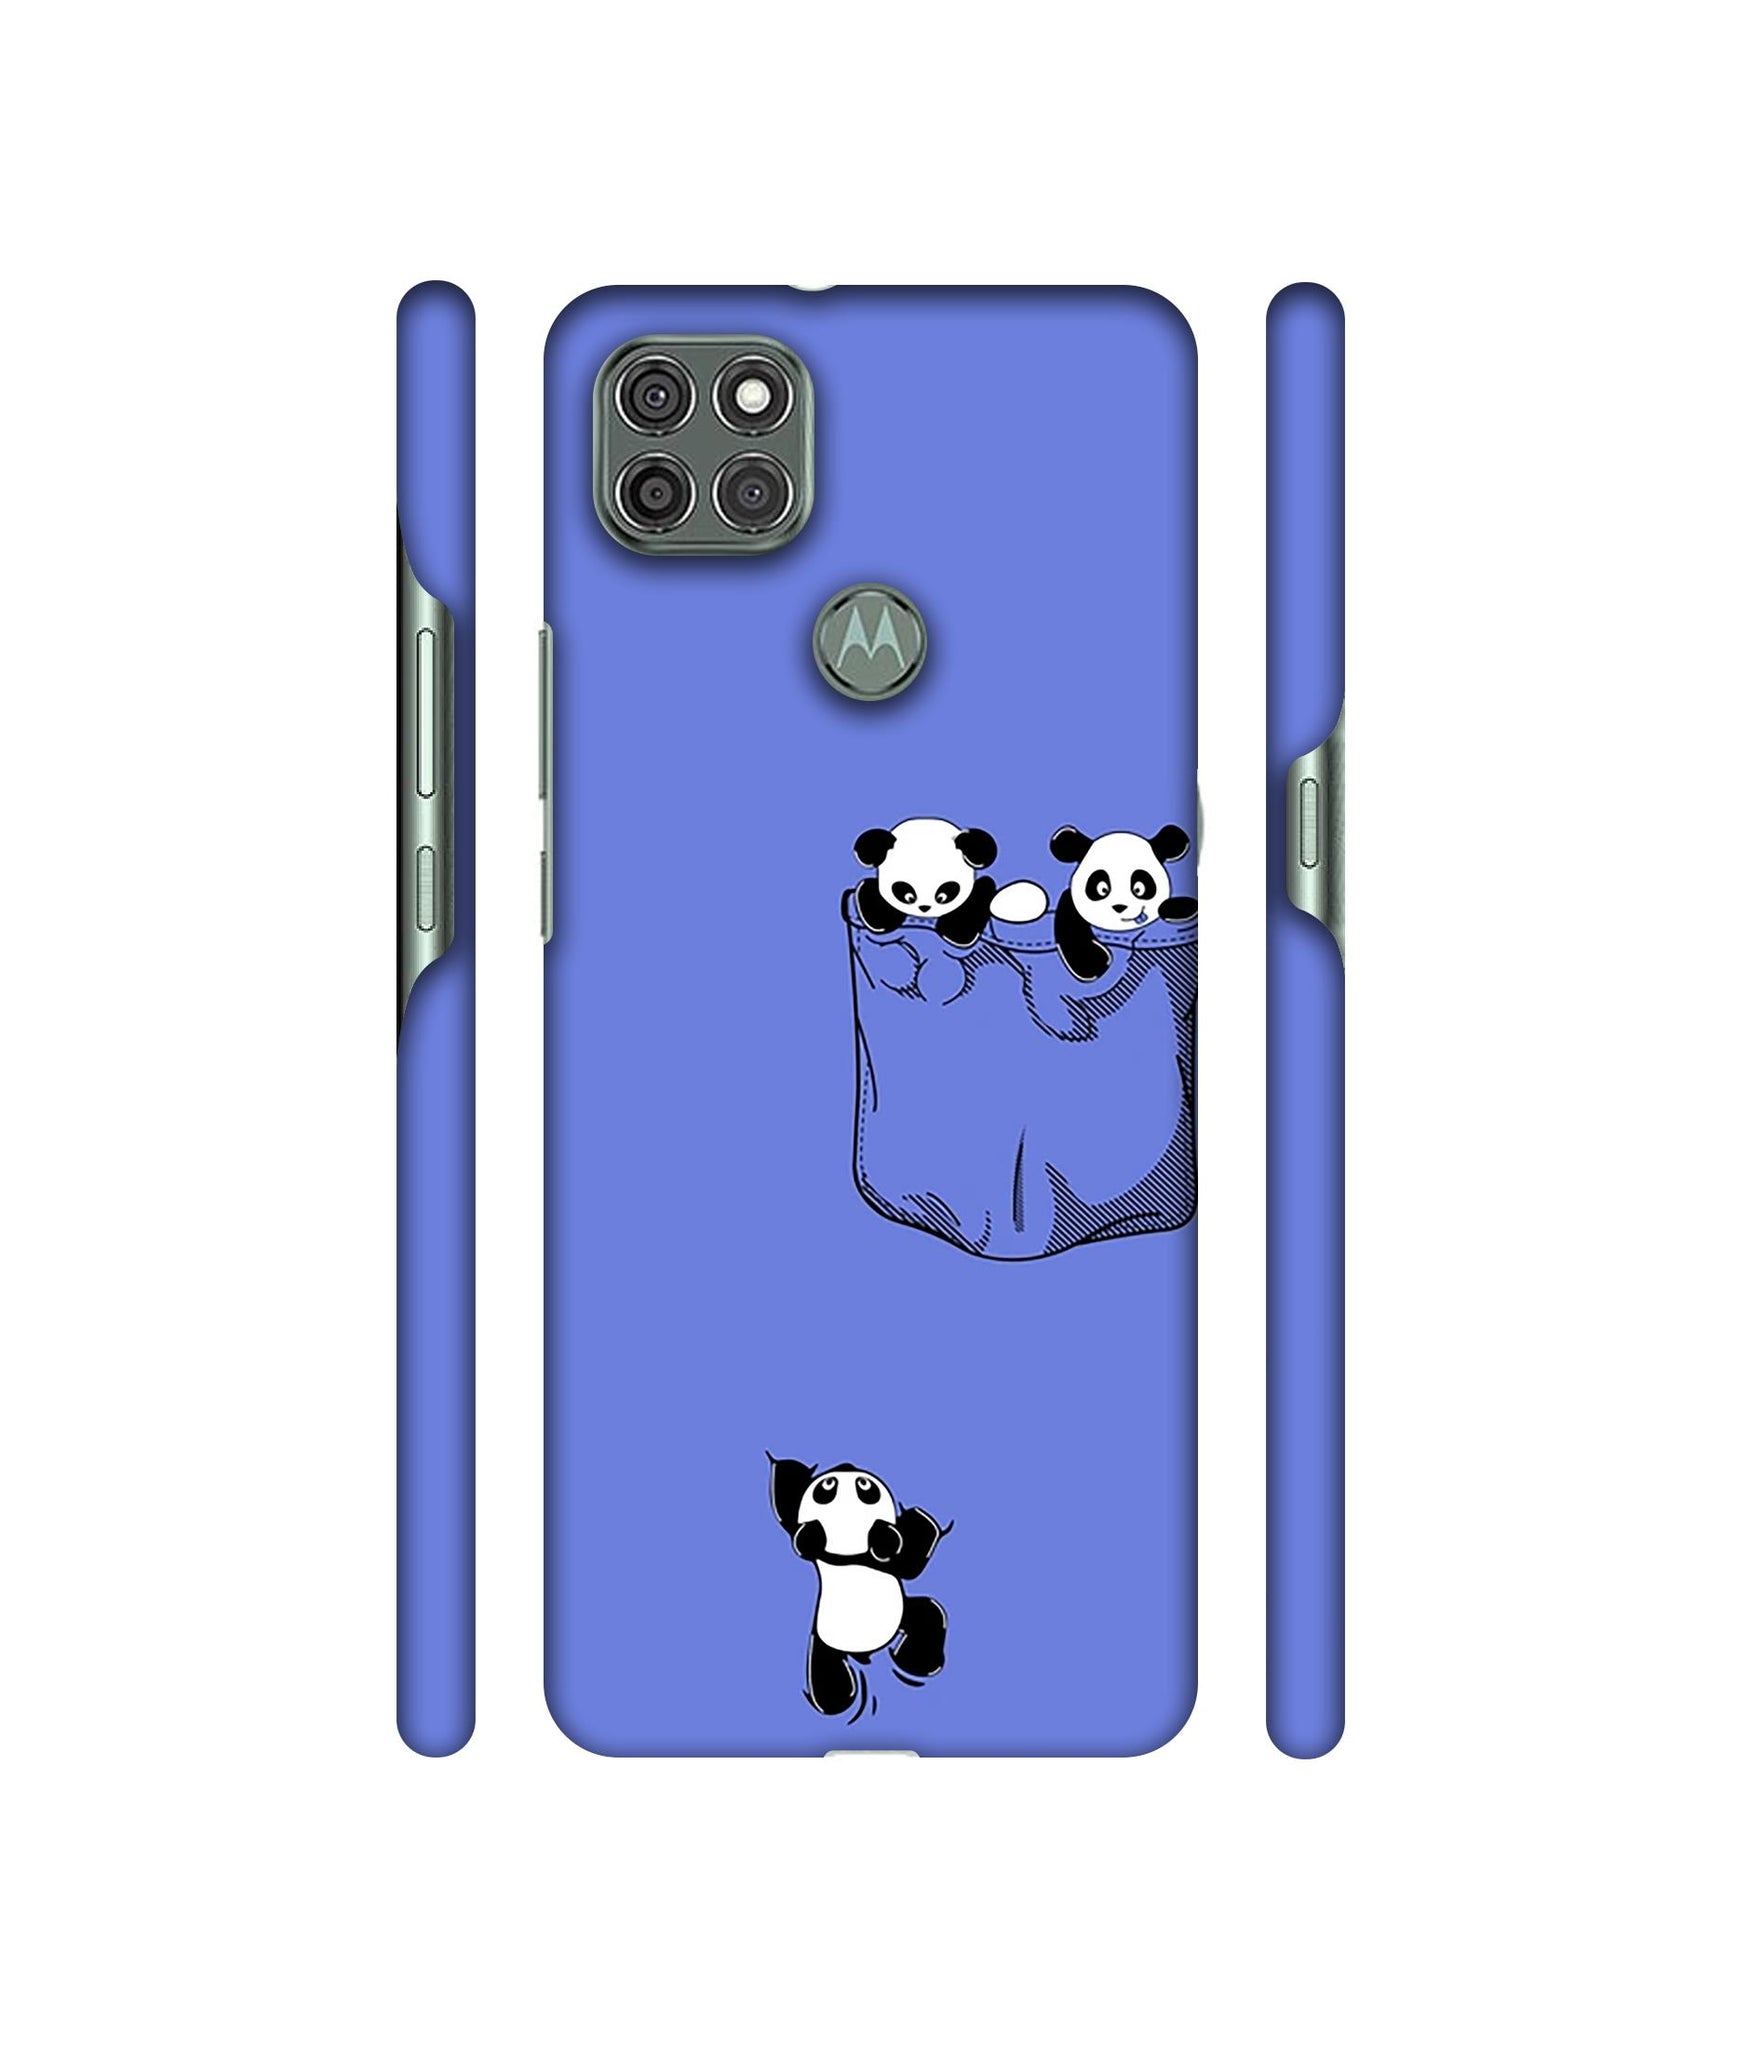 Poket Panda Designer Hard Back Cover for Motorola Moto G9 Power